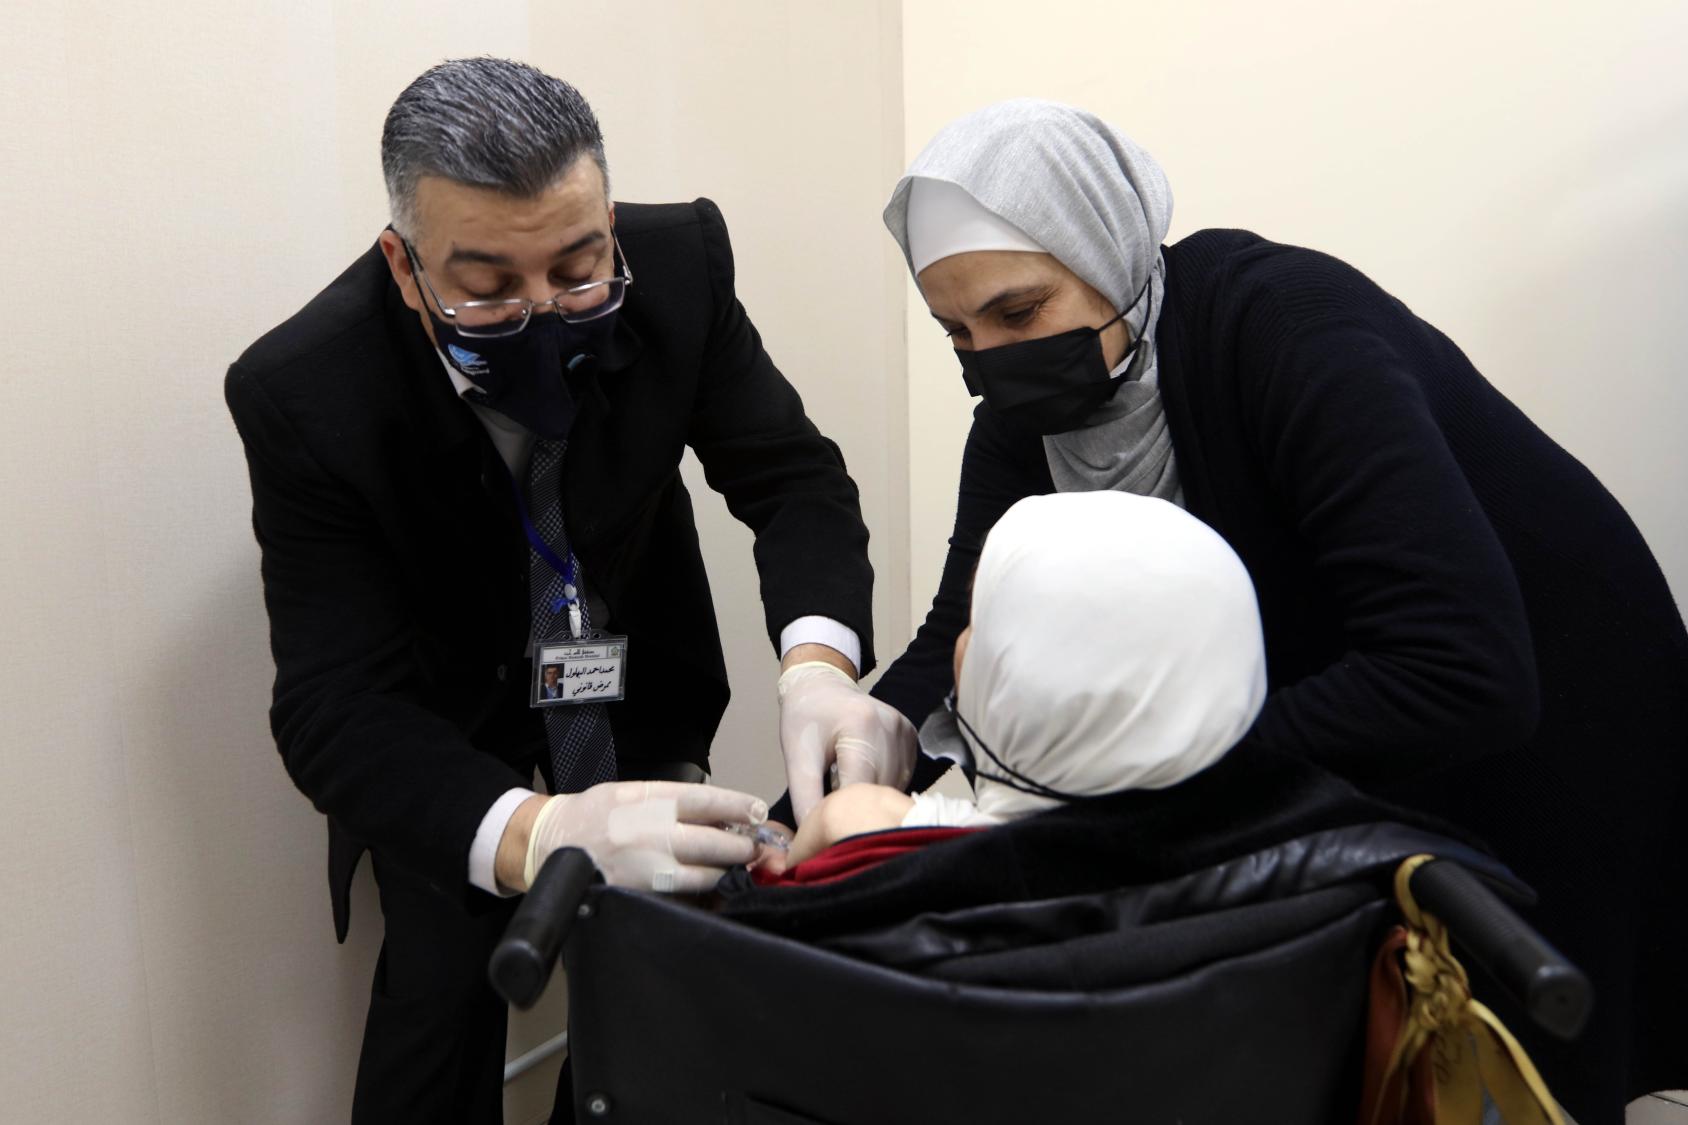 Une femme en fauteuil roulant se fait administrer un vaccin anti-COVID-19 par un homme vêtu d'un costume et portant un masque de protection respiratoire noir et des gants de protection. Une autre femme, voilée et portant elle aussi un masque de protection respiratoire noir aide l'homme à administrer le vaccin à la patiente.